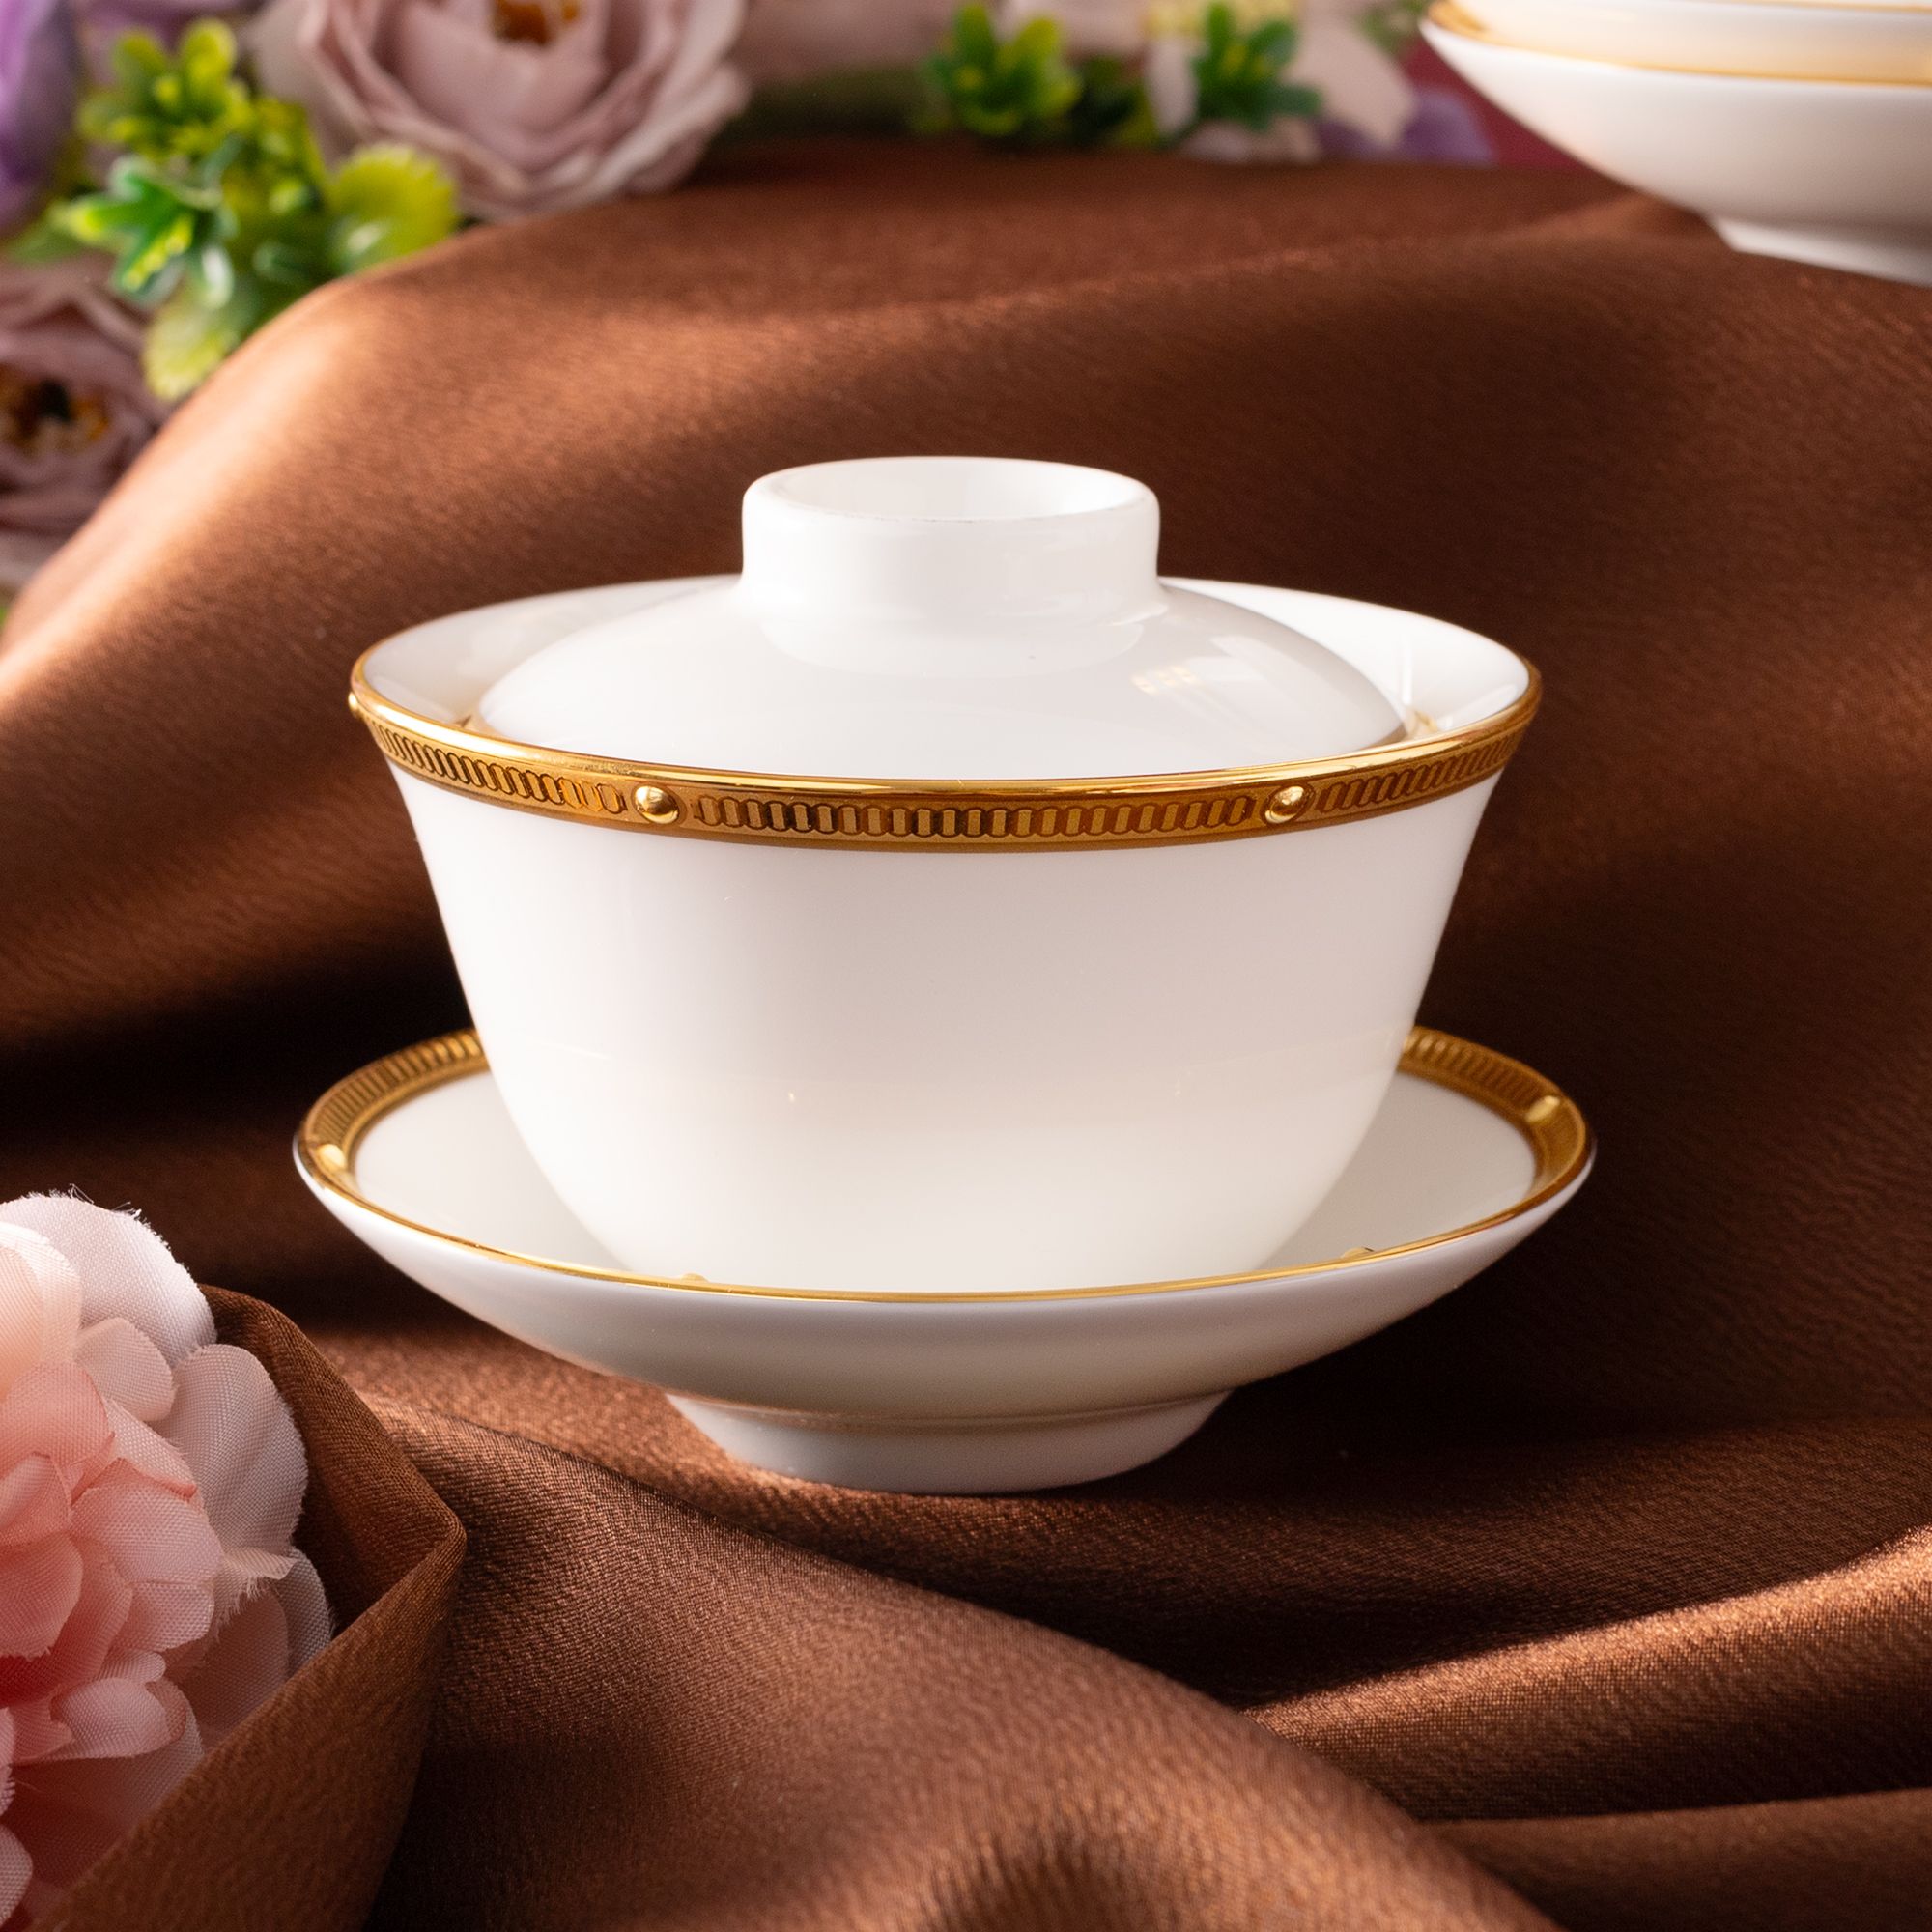  Bộ ấm chén uống trà 13 món Châu Á (ấm 950ml, tách 160ml) | Rochelle Gold 4796L-T014A 